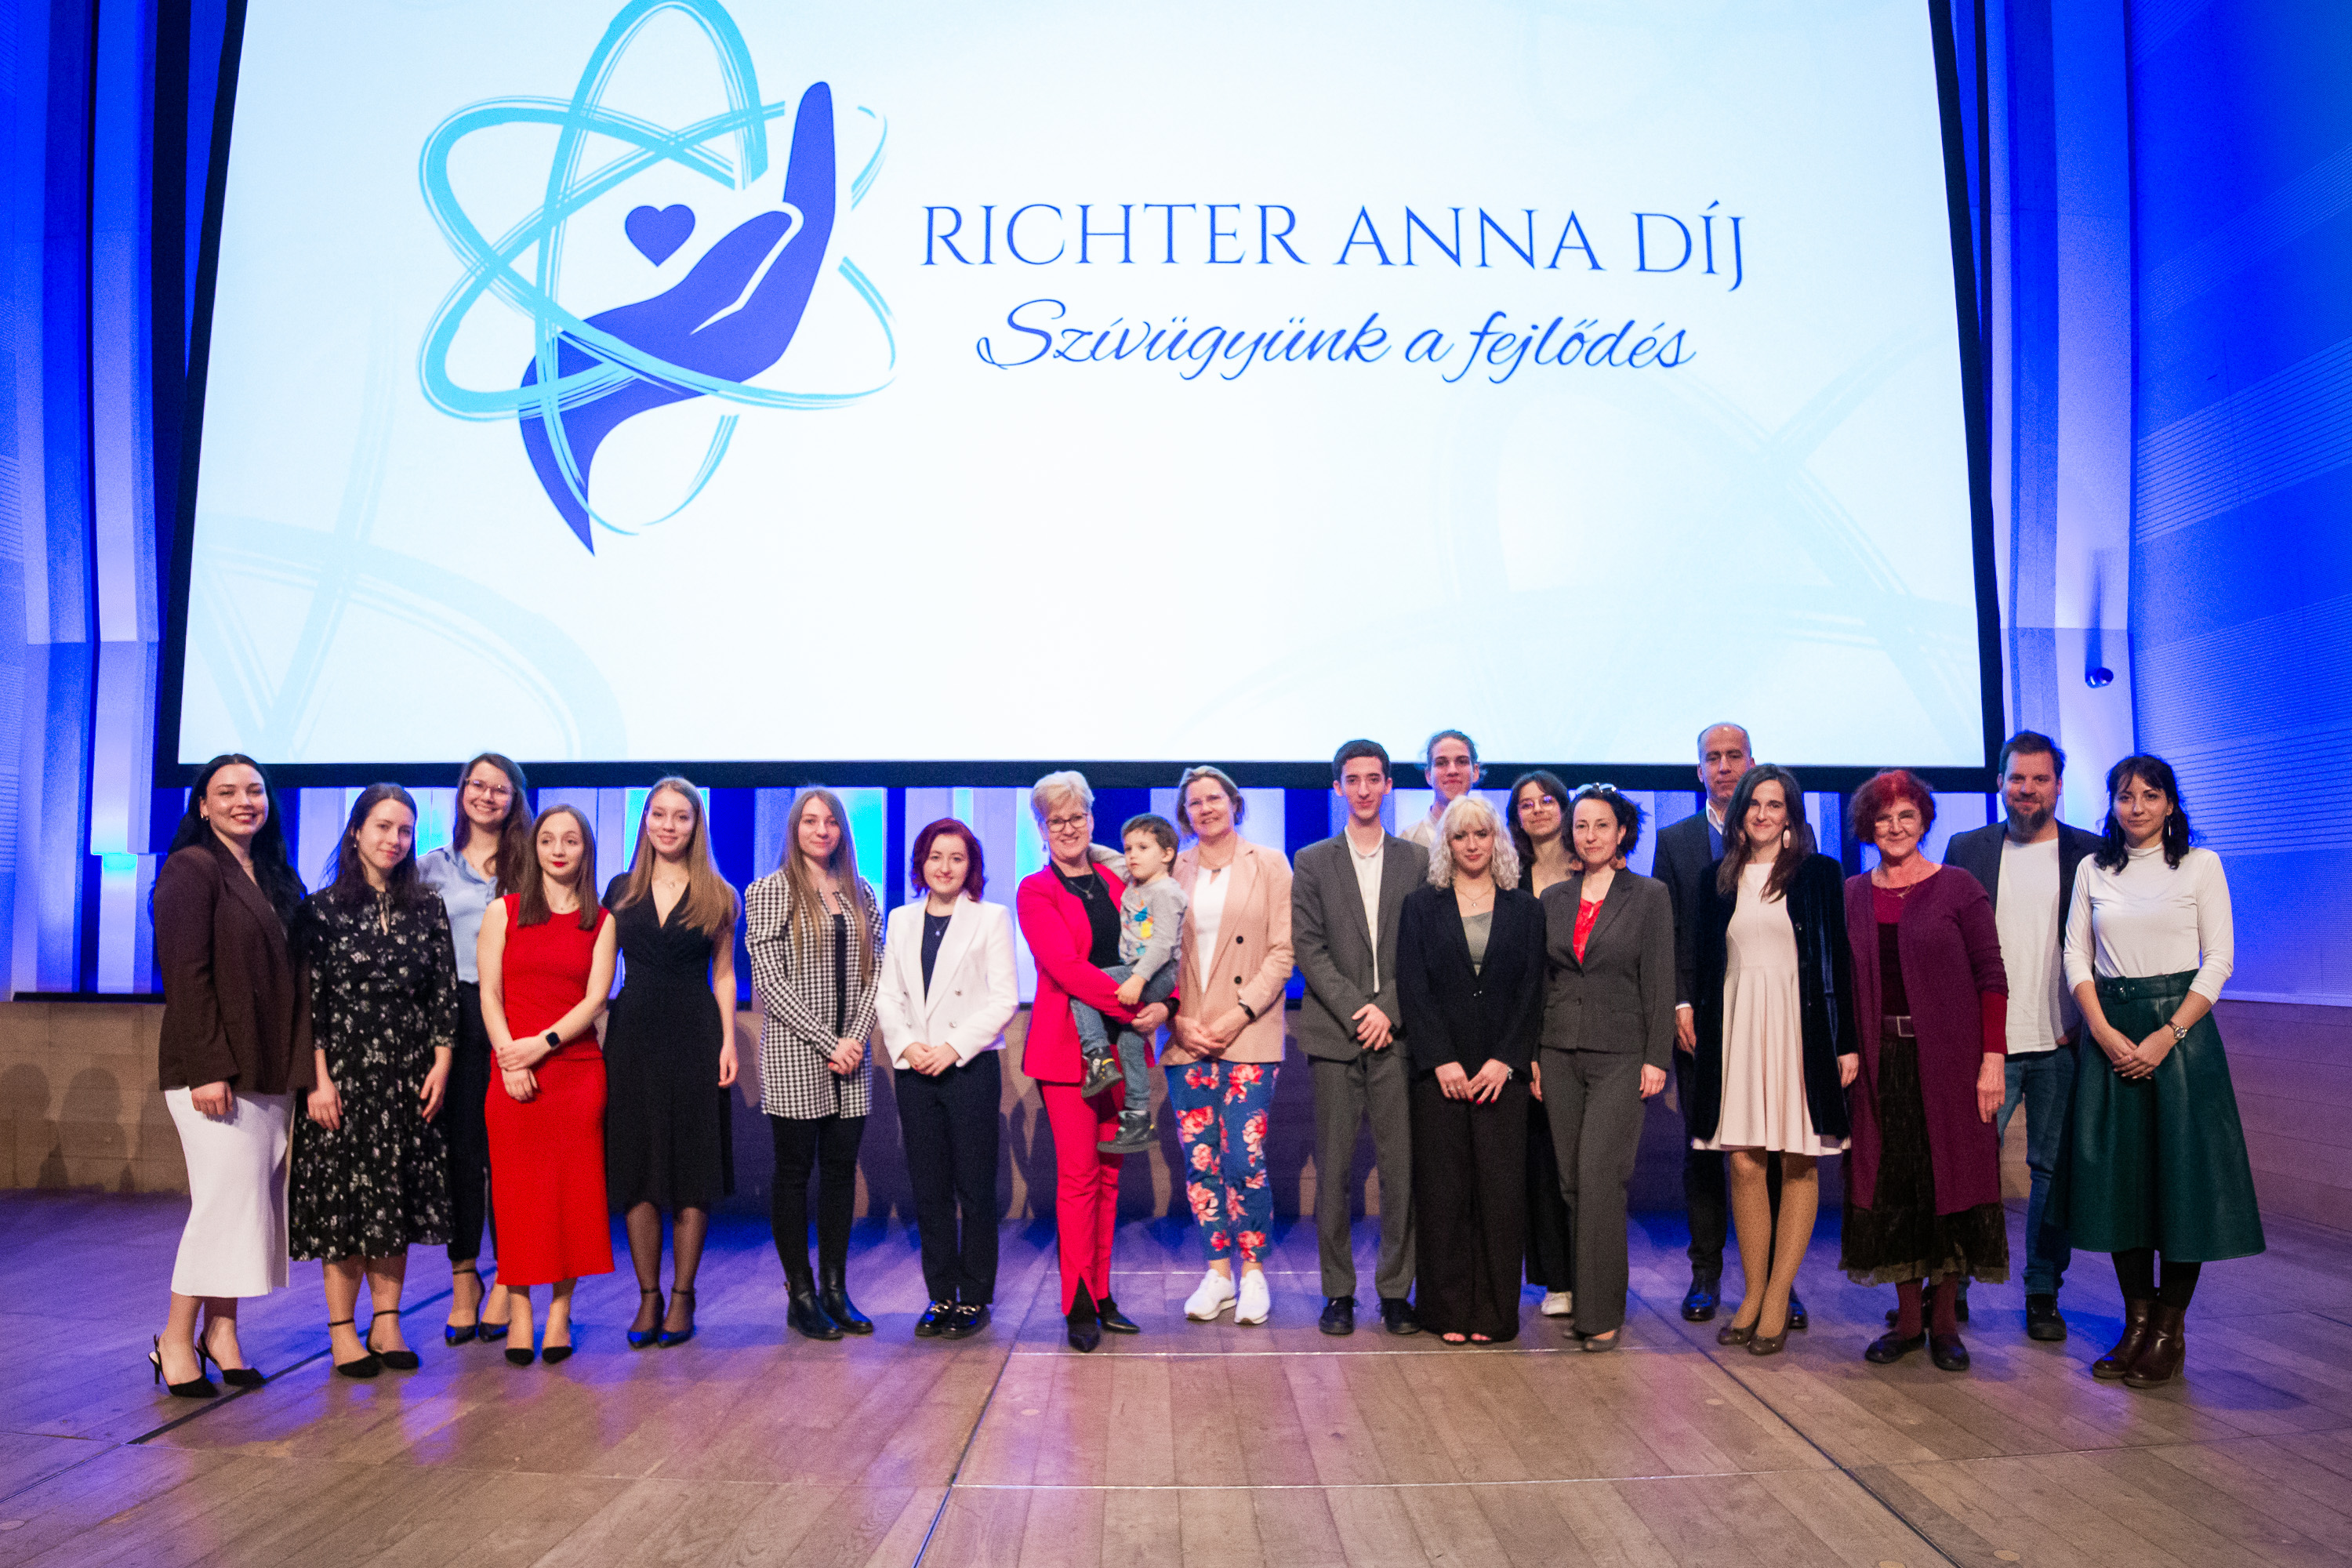 Riadót fújtak a fiatalok mentális és fizikai jóllétéért tenni vágyó győztesek a Richter Anna Díj idei gáláján